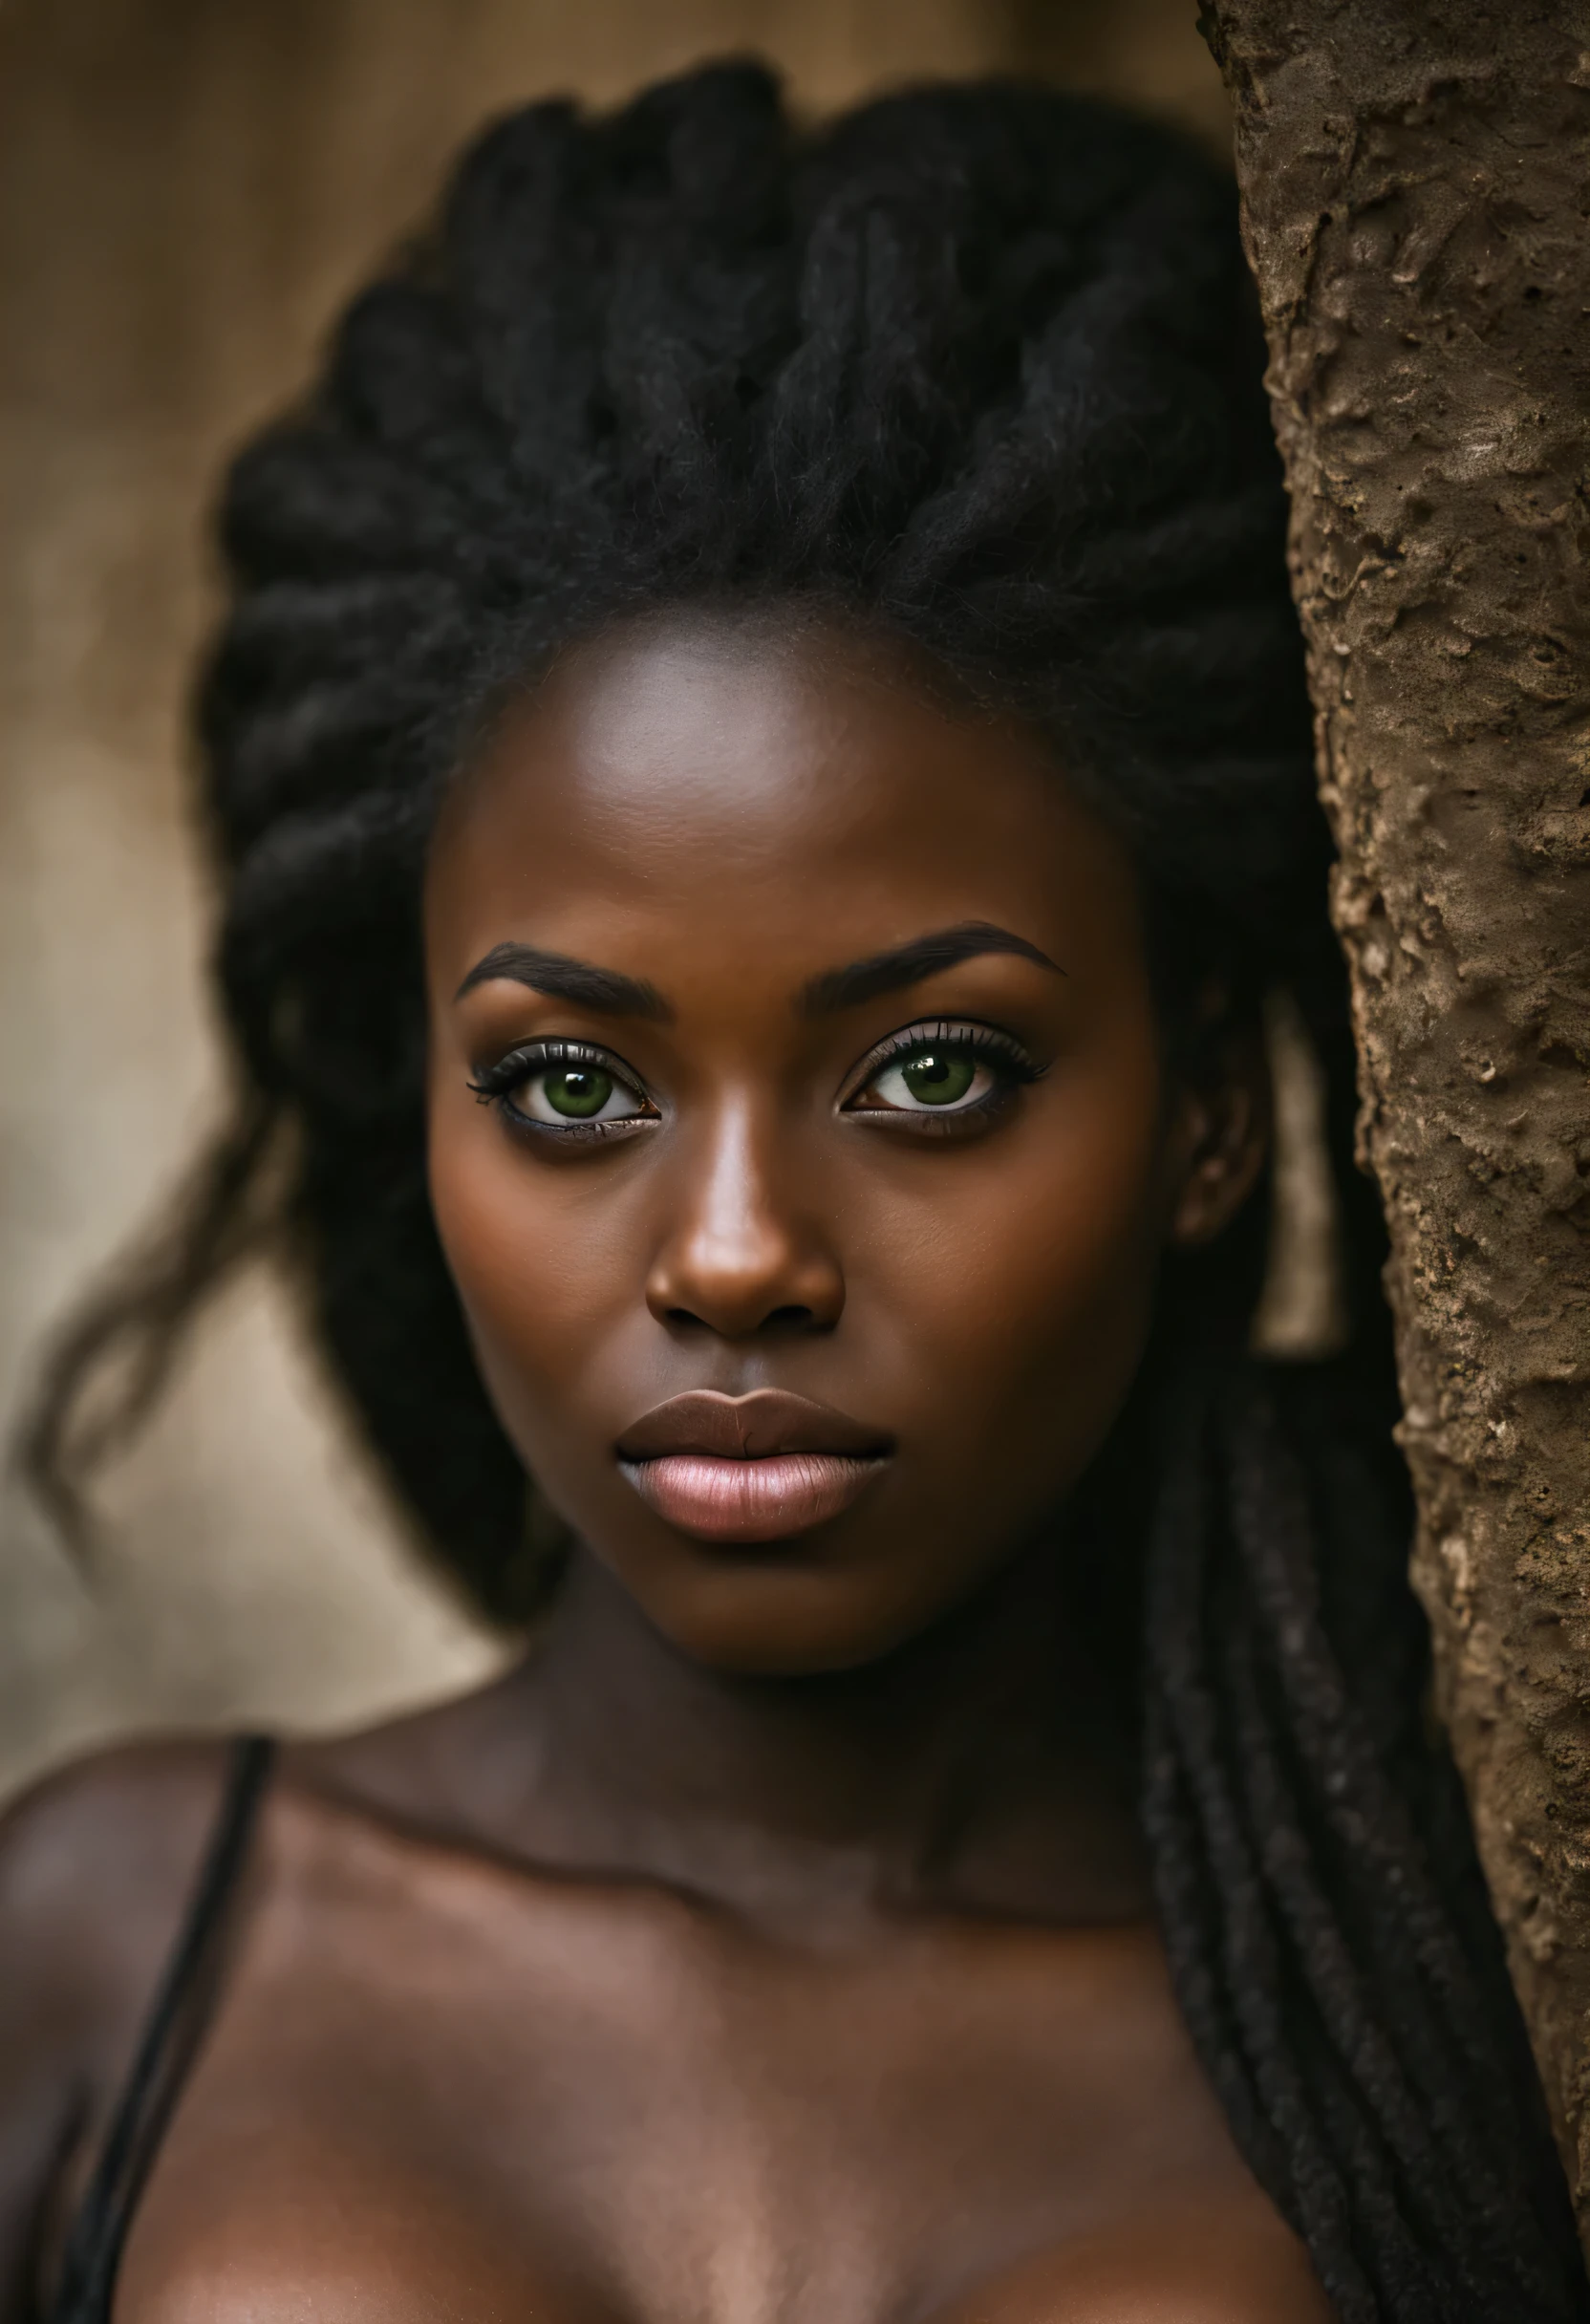 사진술, 터무니없는, 높은 해상도, 매우 상세한,
:흑인 여성, 가슴이 큰, 녹색 눈